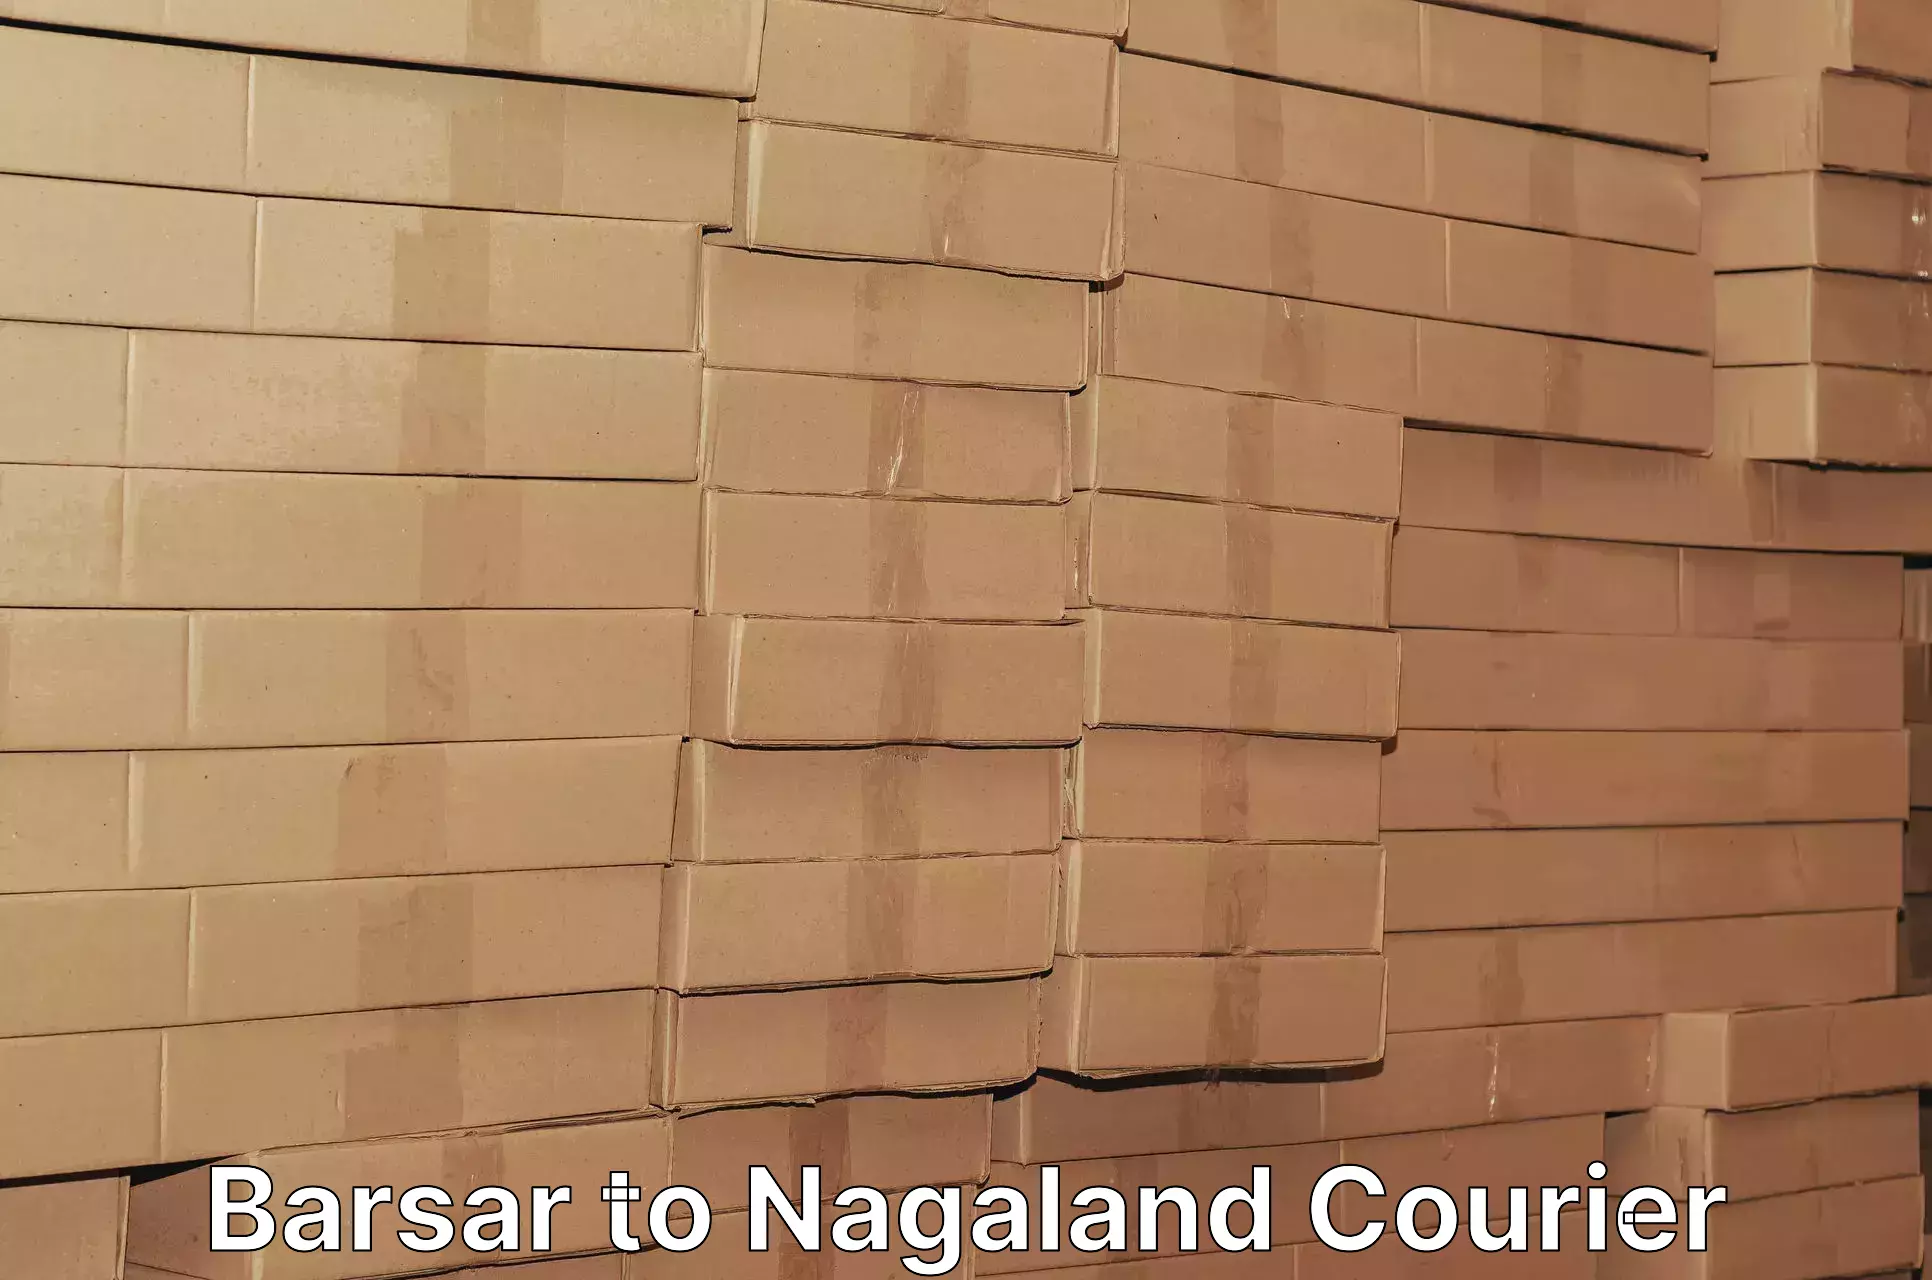 Holiday shipping services Barsar to NIT Nagaland